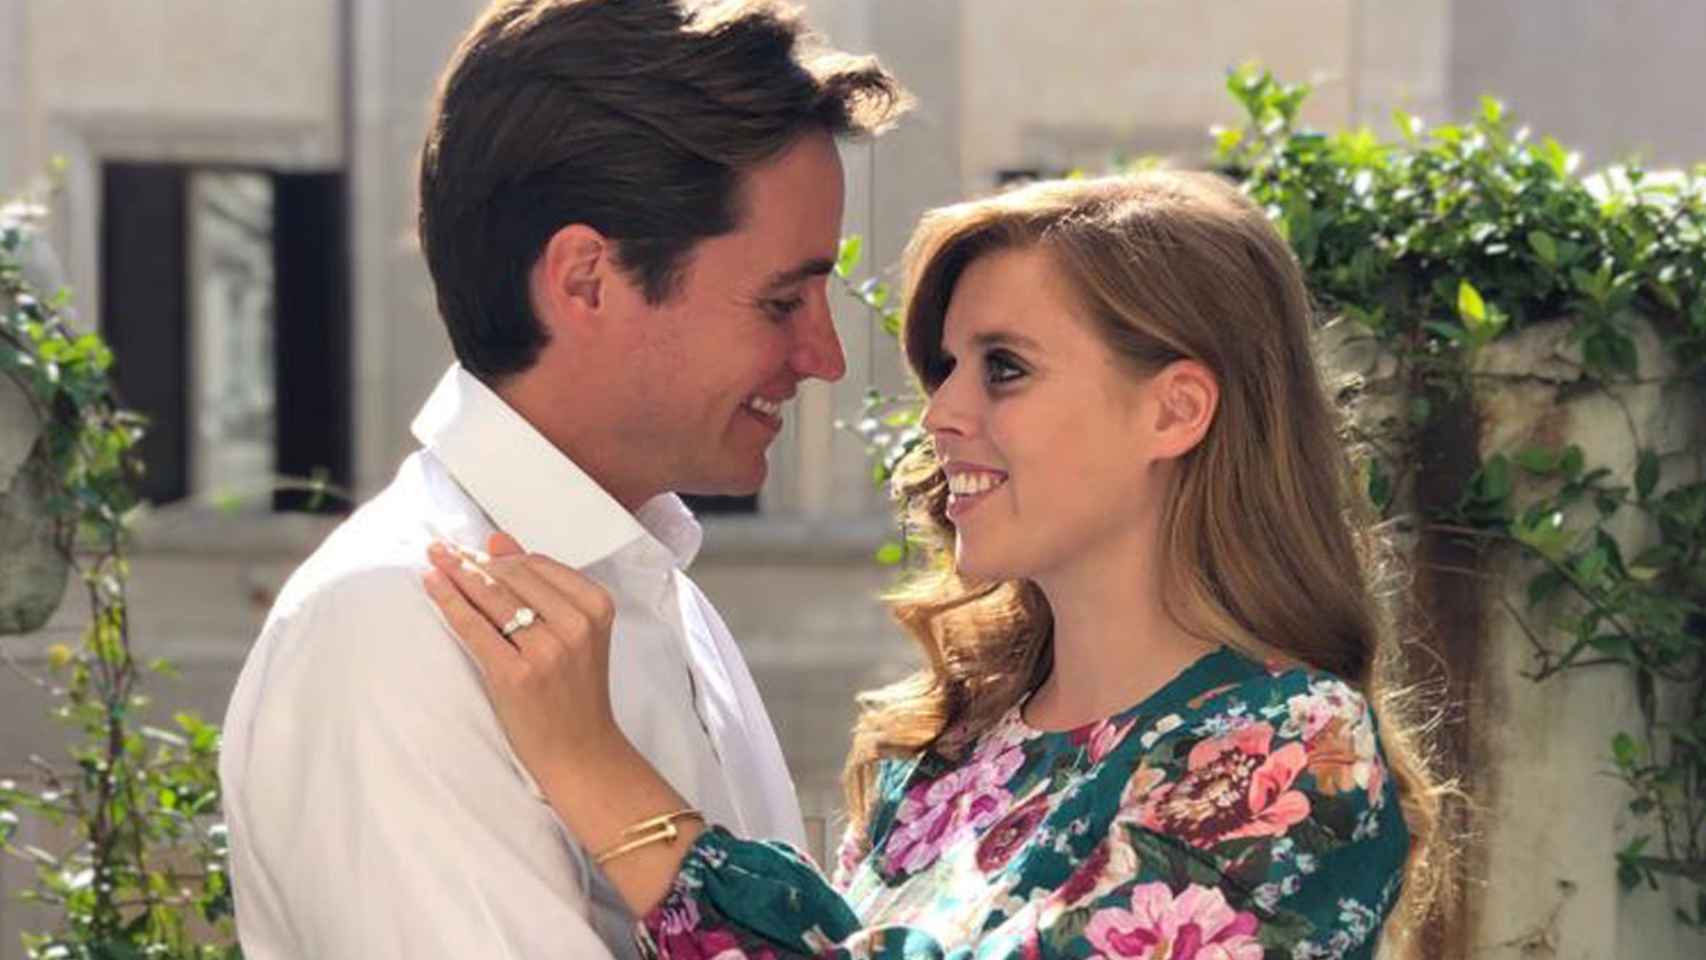 La hija del príncipe Andrés anunciaba su compromiso con unas románticas fotografías.